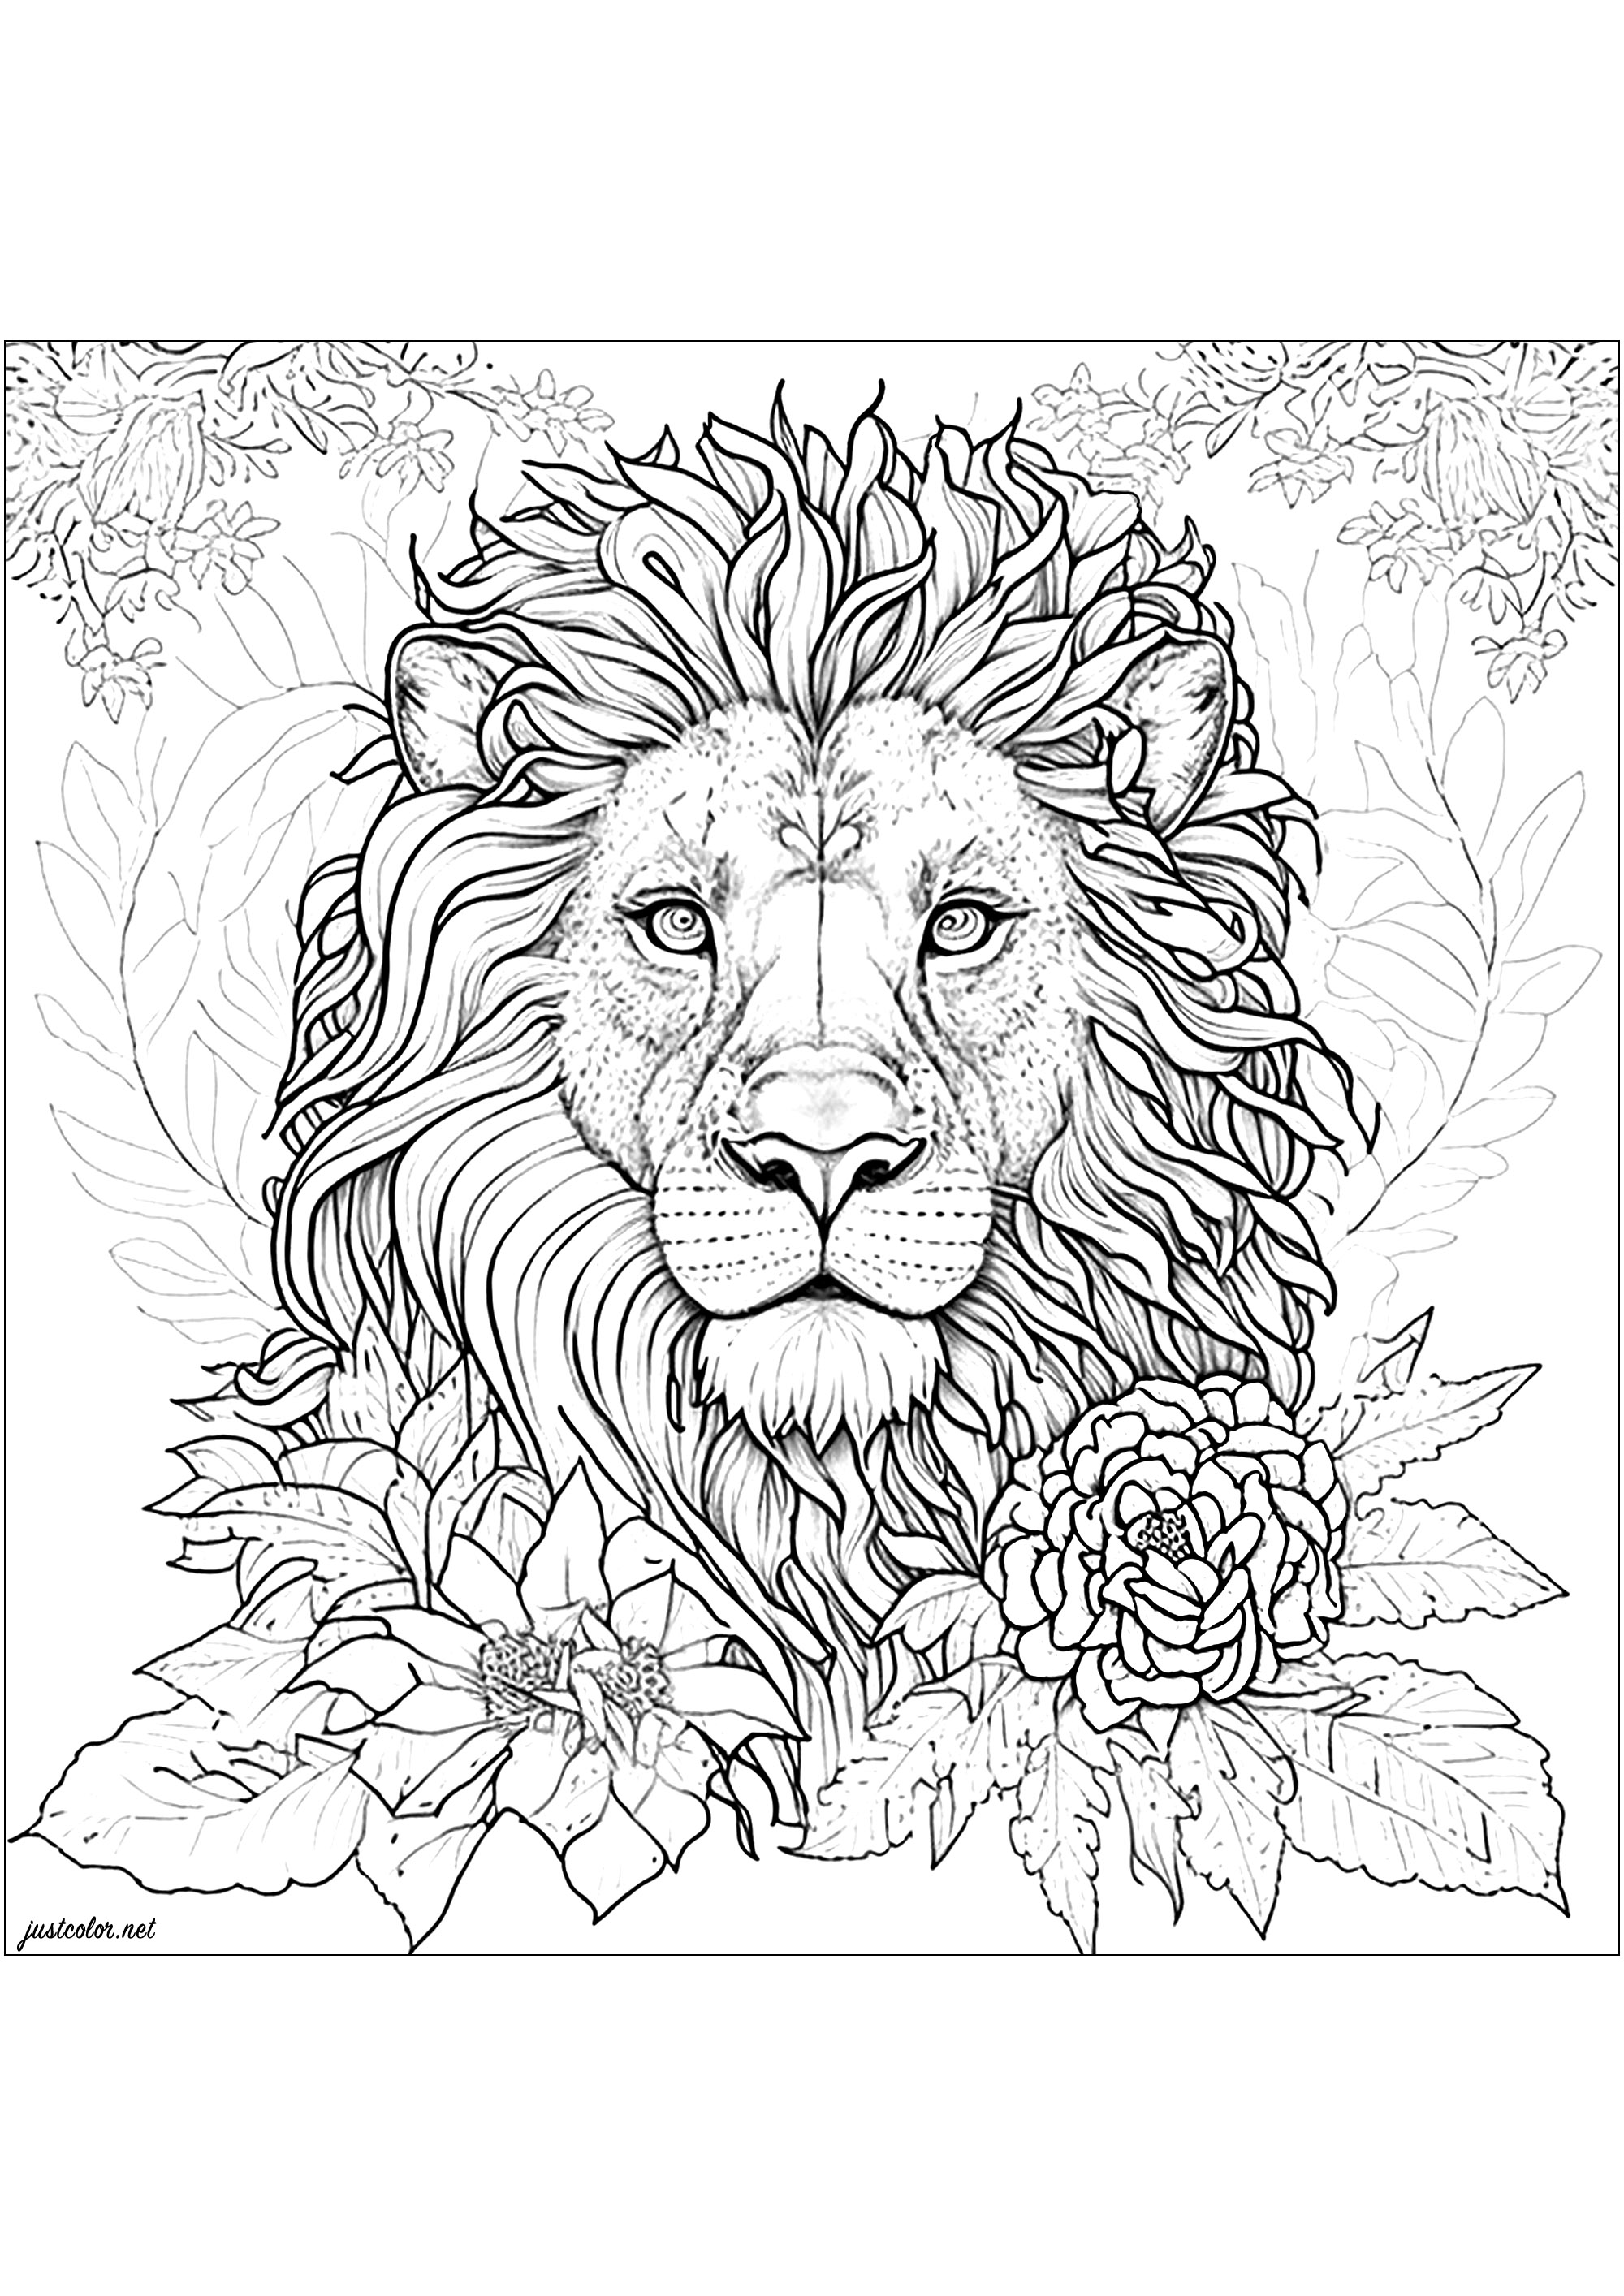 Coloriage d'un lion entouré de jolies fleurs. Ce dessin de lion est ultra réaliste et détaillé ! Prenez votre temps pour colorier chaque partie de sa belle crinière, et toute la végétation qui l'entoure, Artiste : IAsabelle